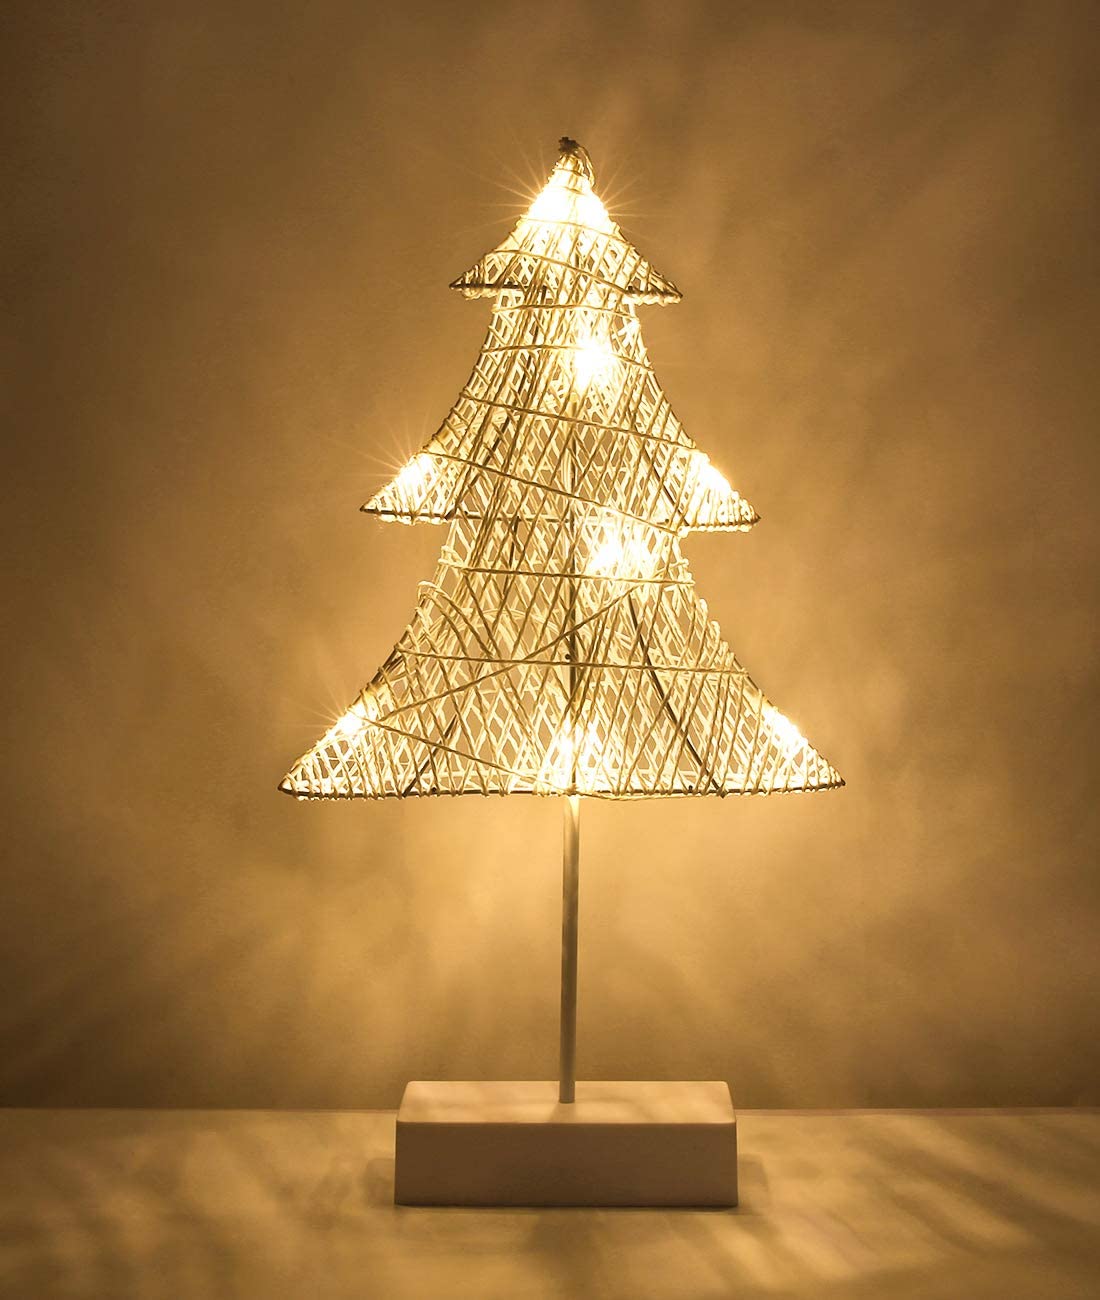 Christmas Tree Table Lamp